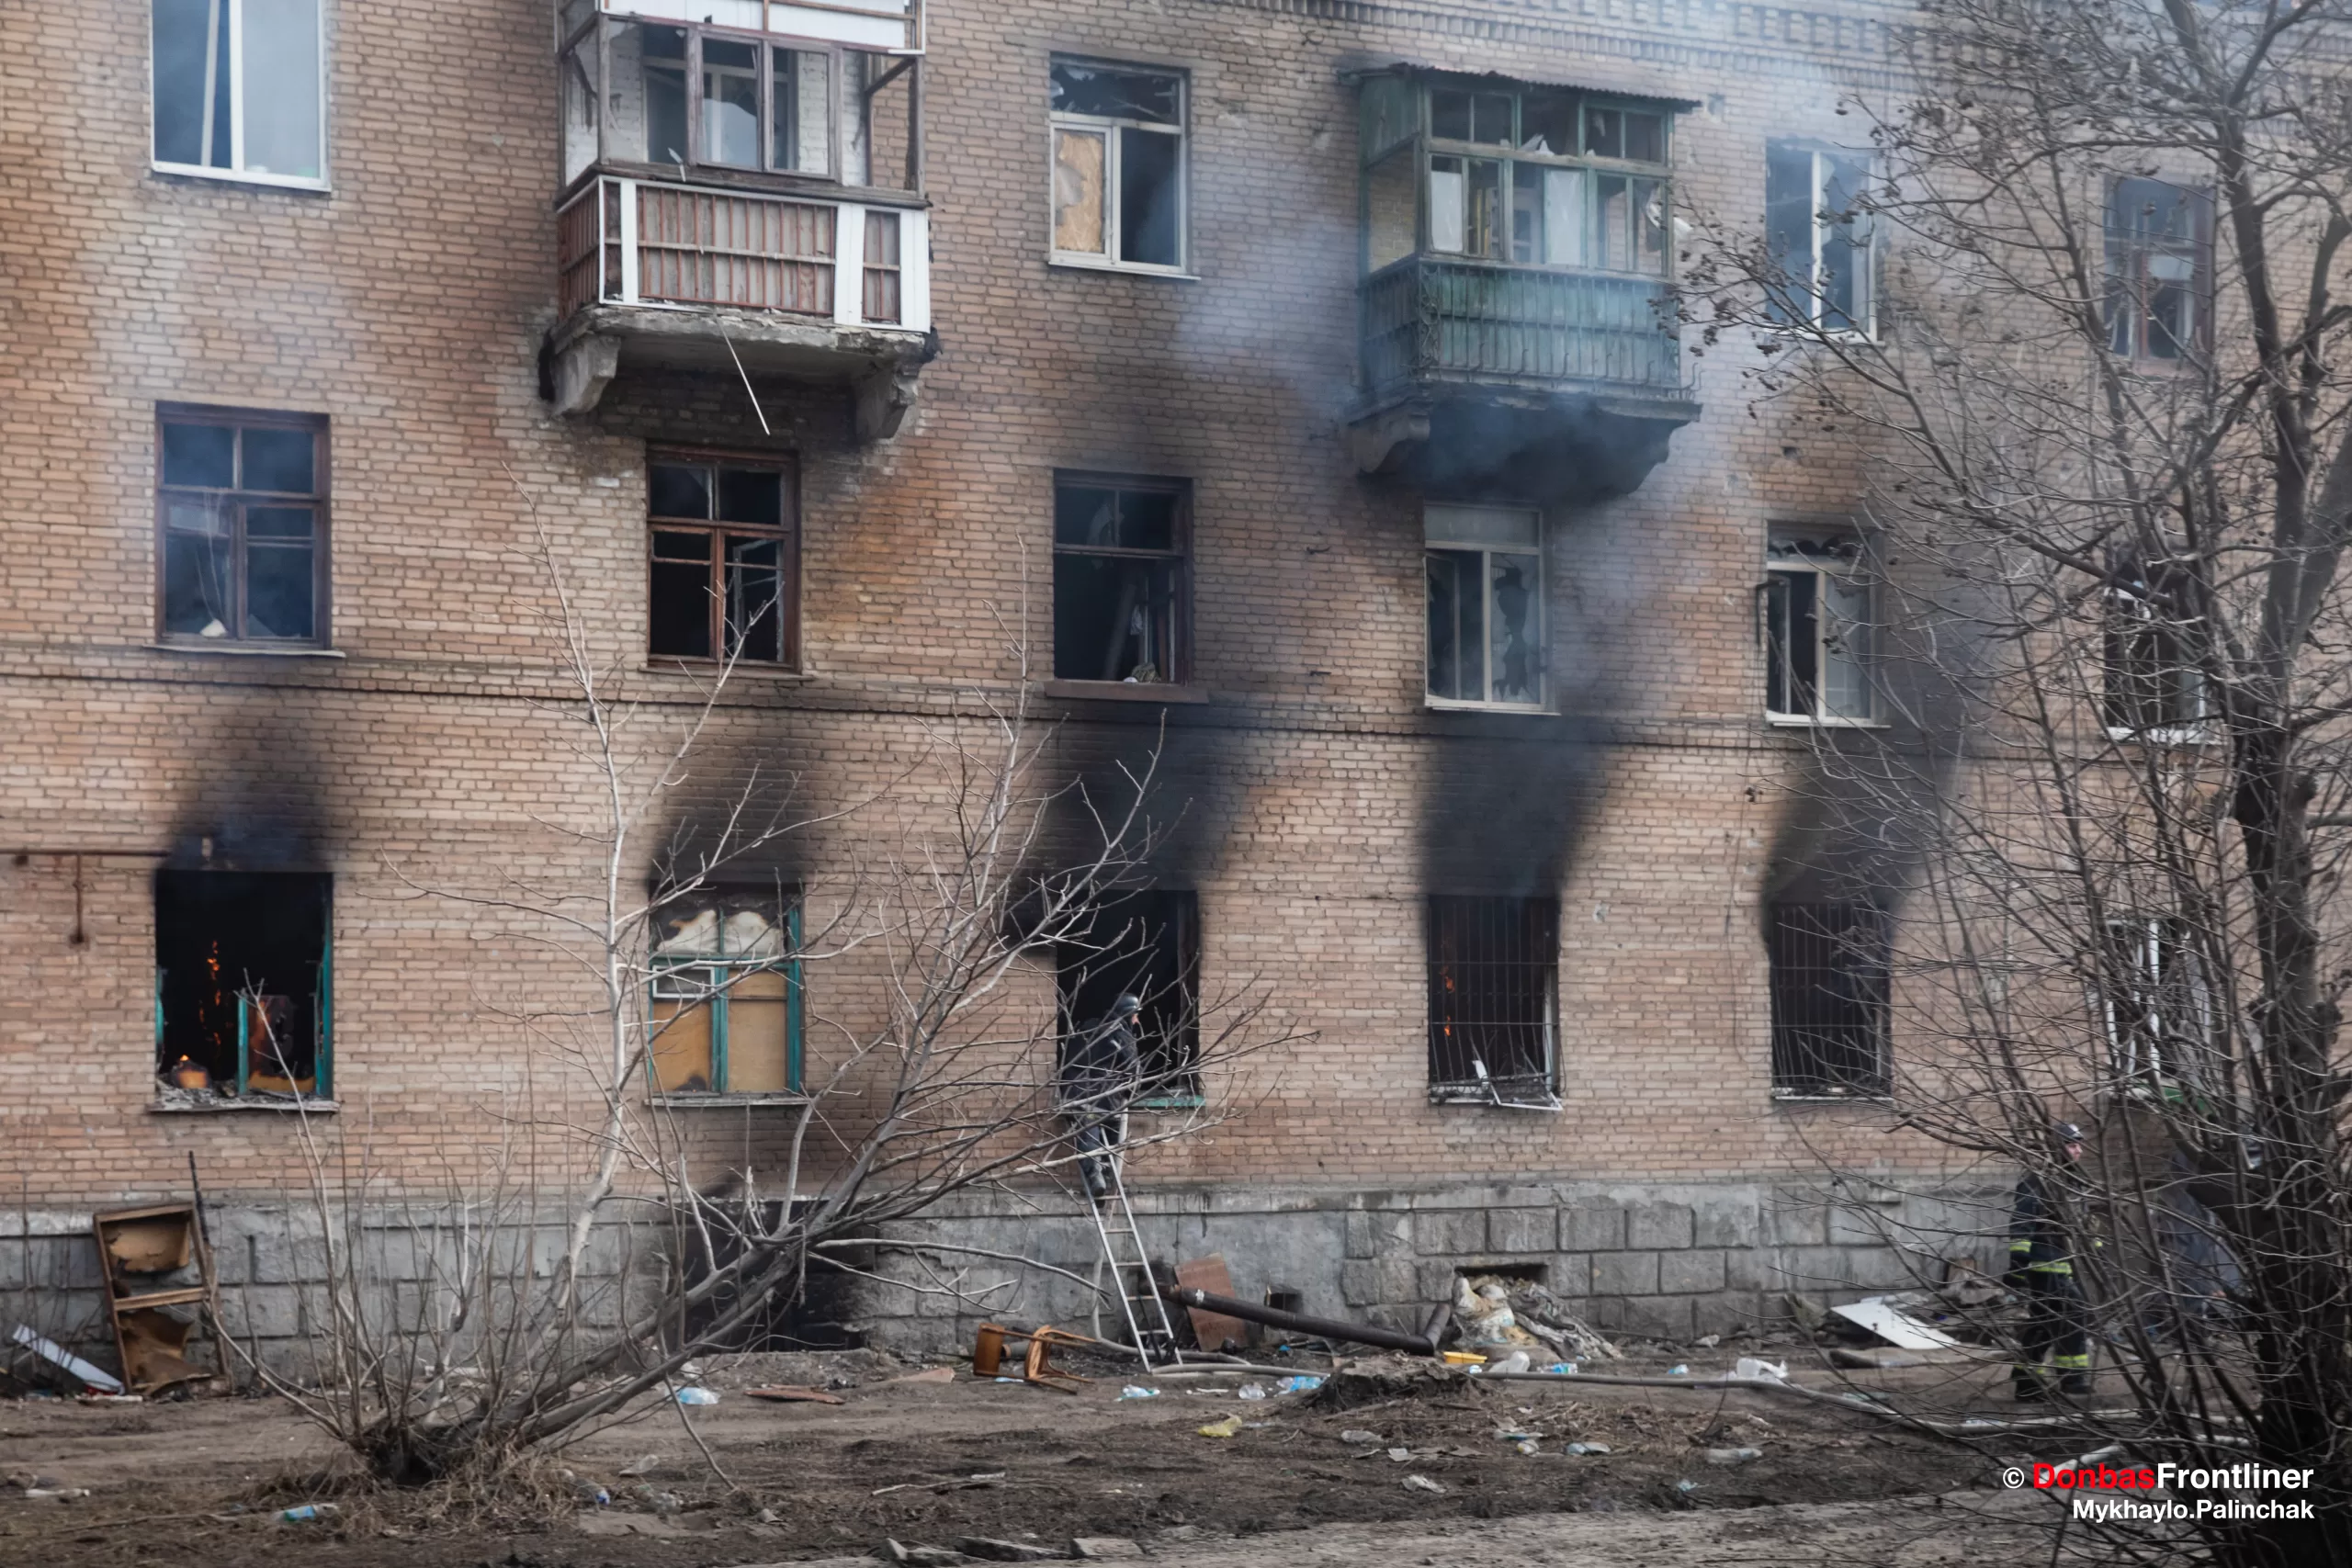 Лікарі в’їхали в Часів Яр, який росіяни щойно обстріляли з артилерії.  Медиків-волонтерів зустріли чорні вигорілі вінка будинку, з яких виривався дим.